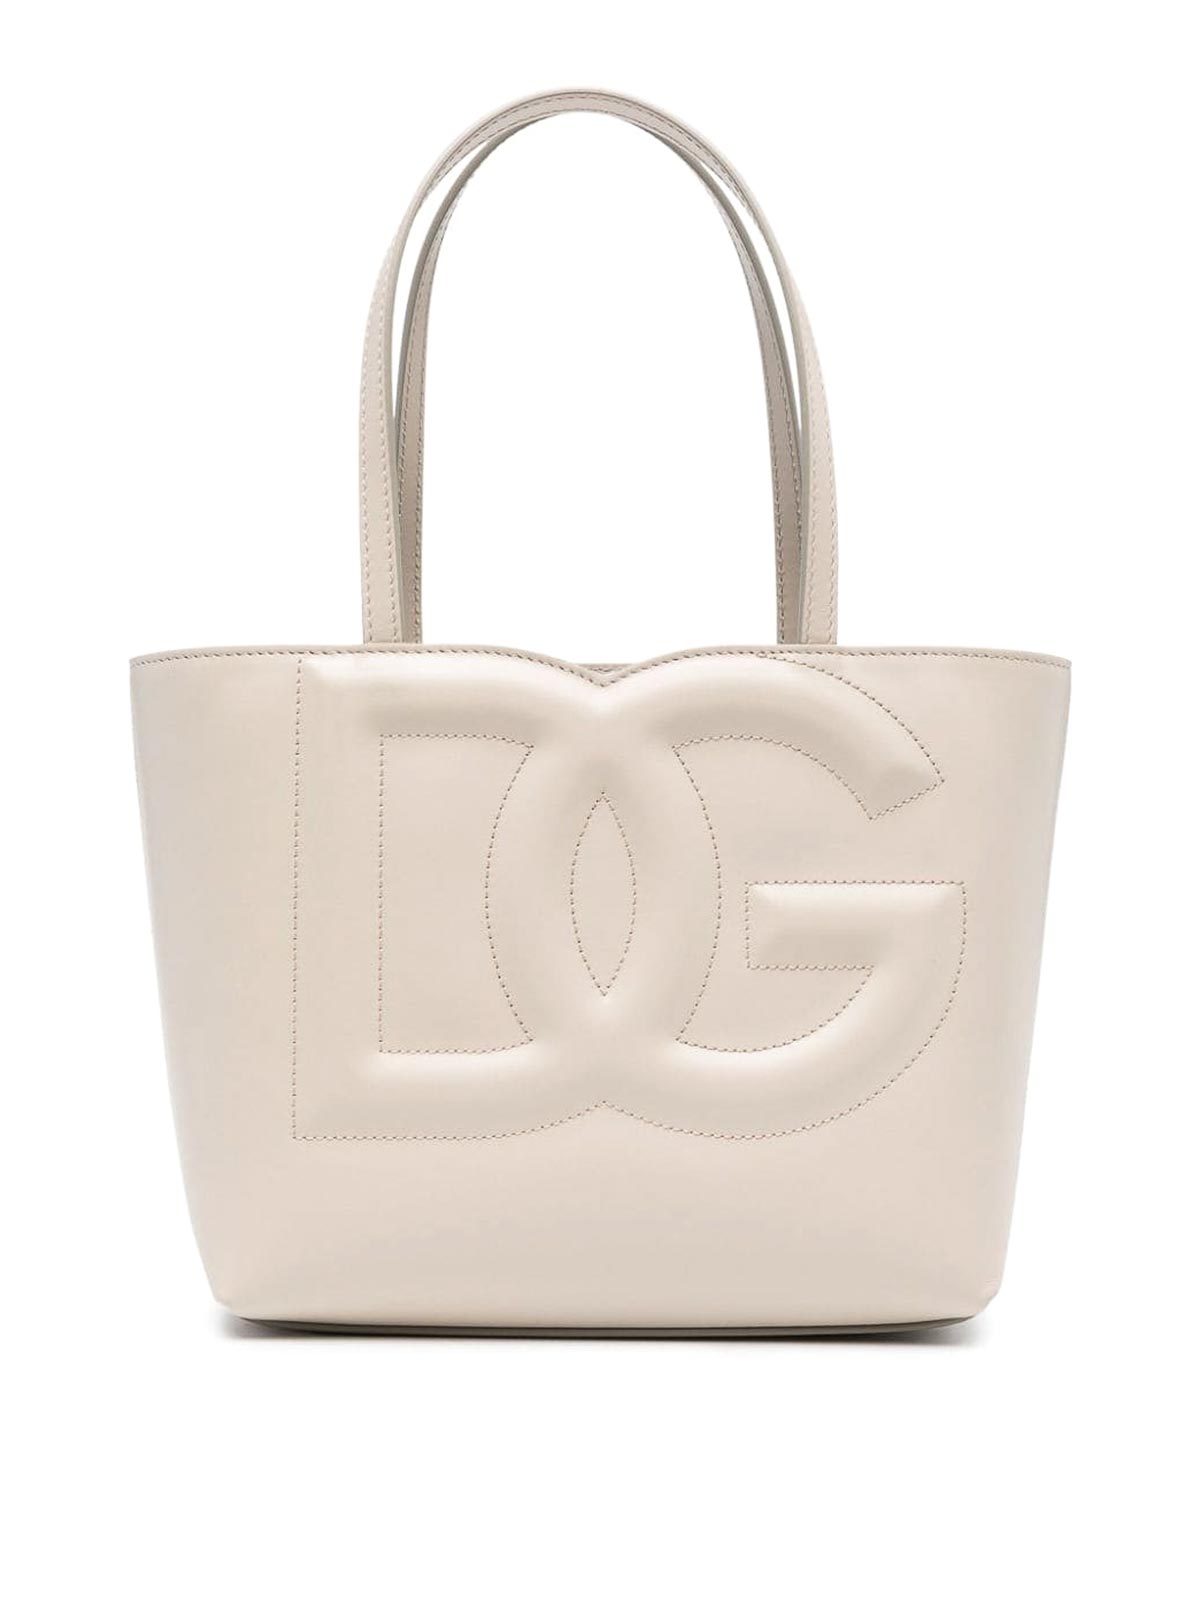 Dolce & Gabbana Dg Logo Leather Tote Bag In White